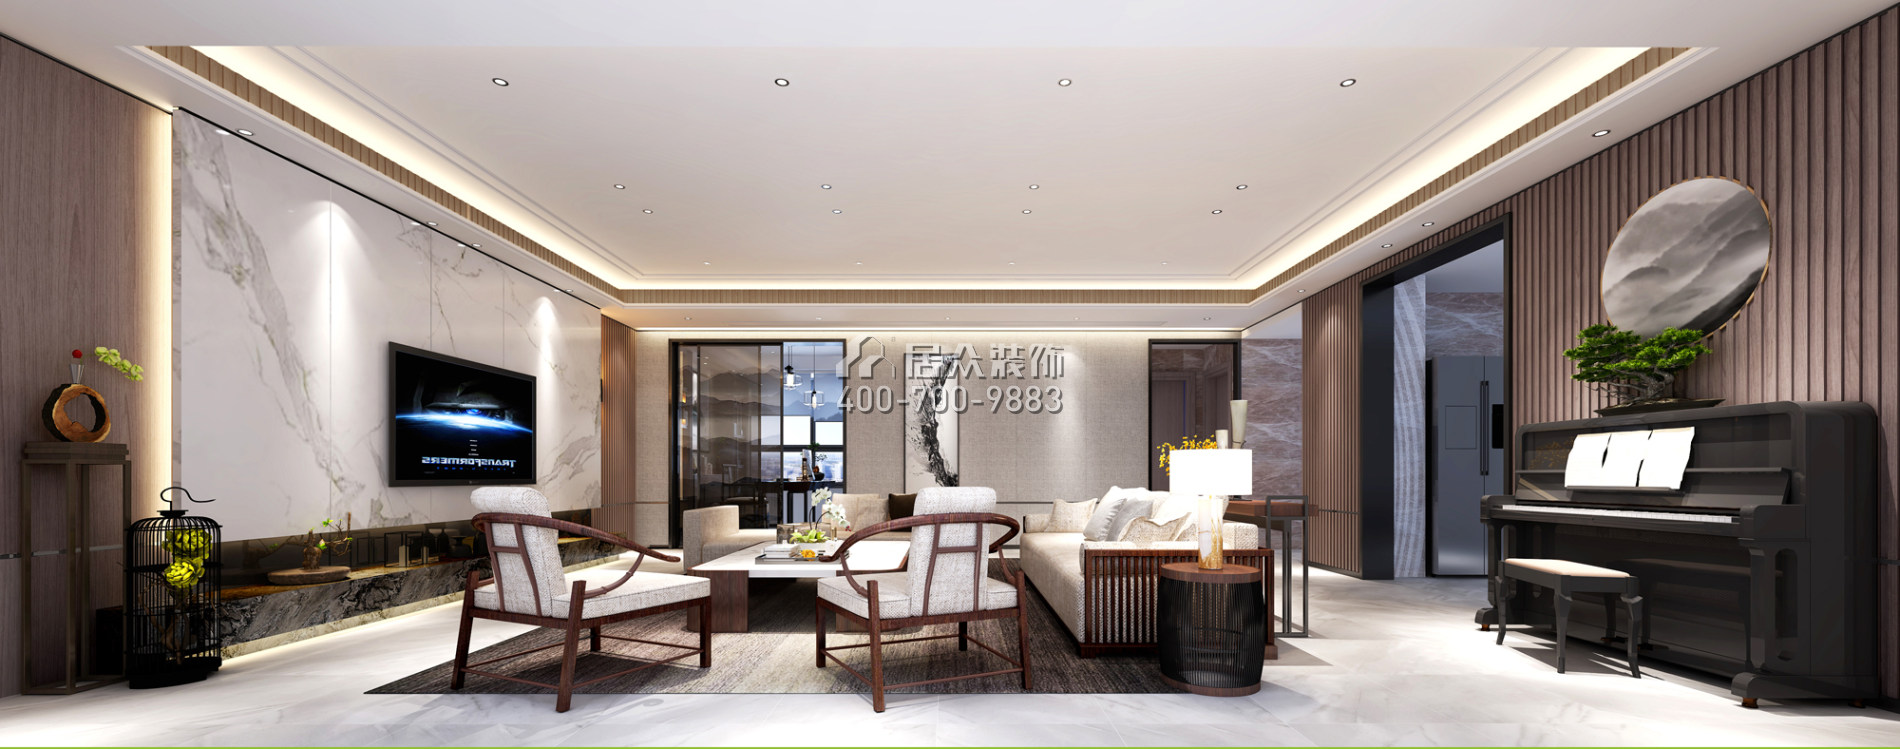 壹方商业中心二期342平方米中式风格平层户型客厅装修效果图